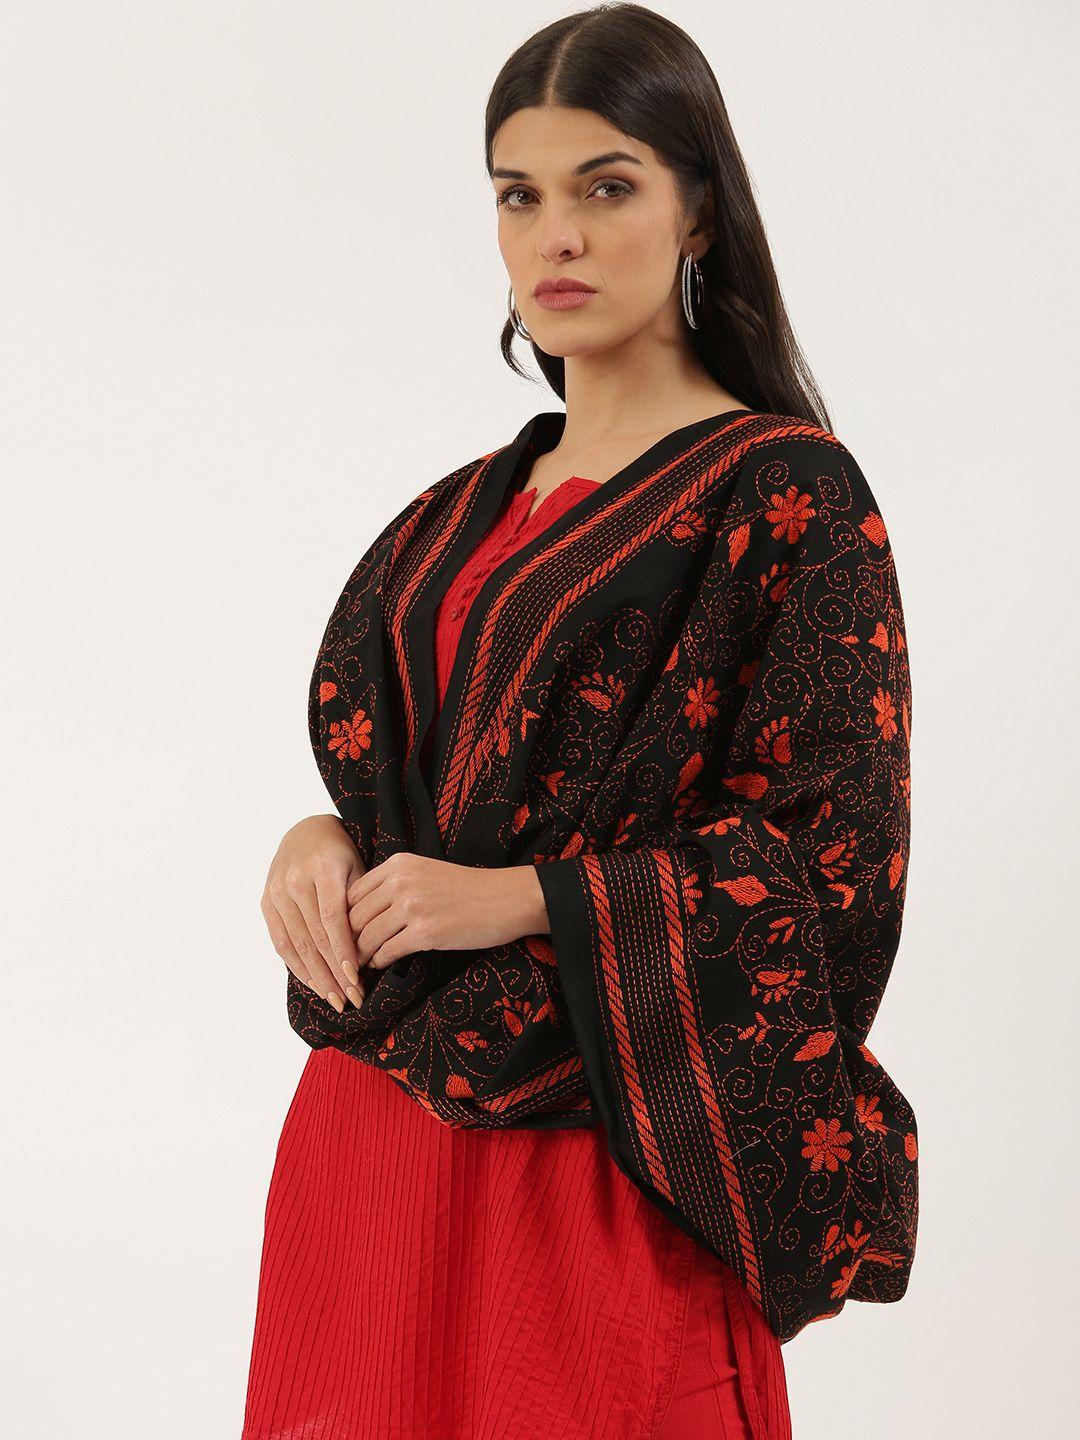 arteastri black & orange ethnic motifs embroidered pure cotton dupatta with kantha work